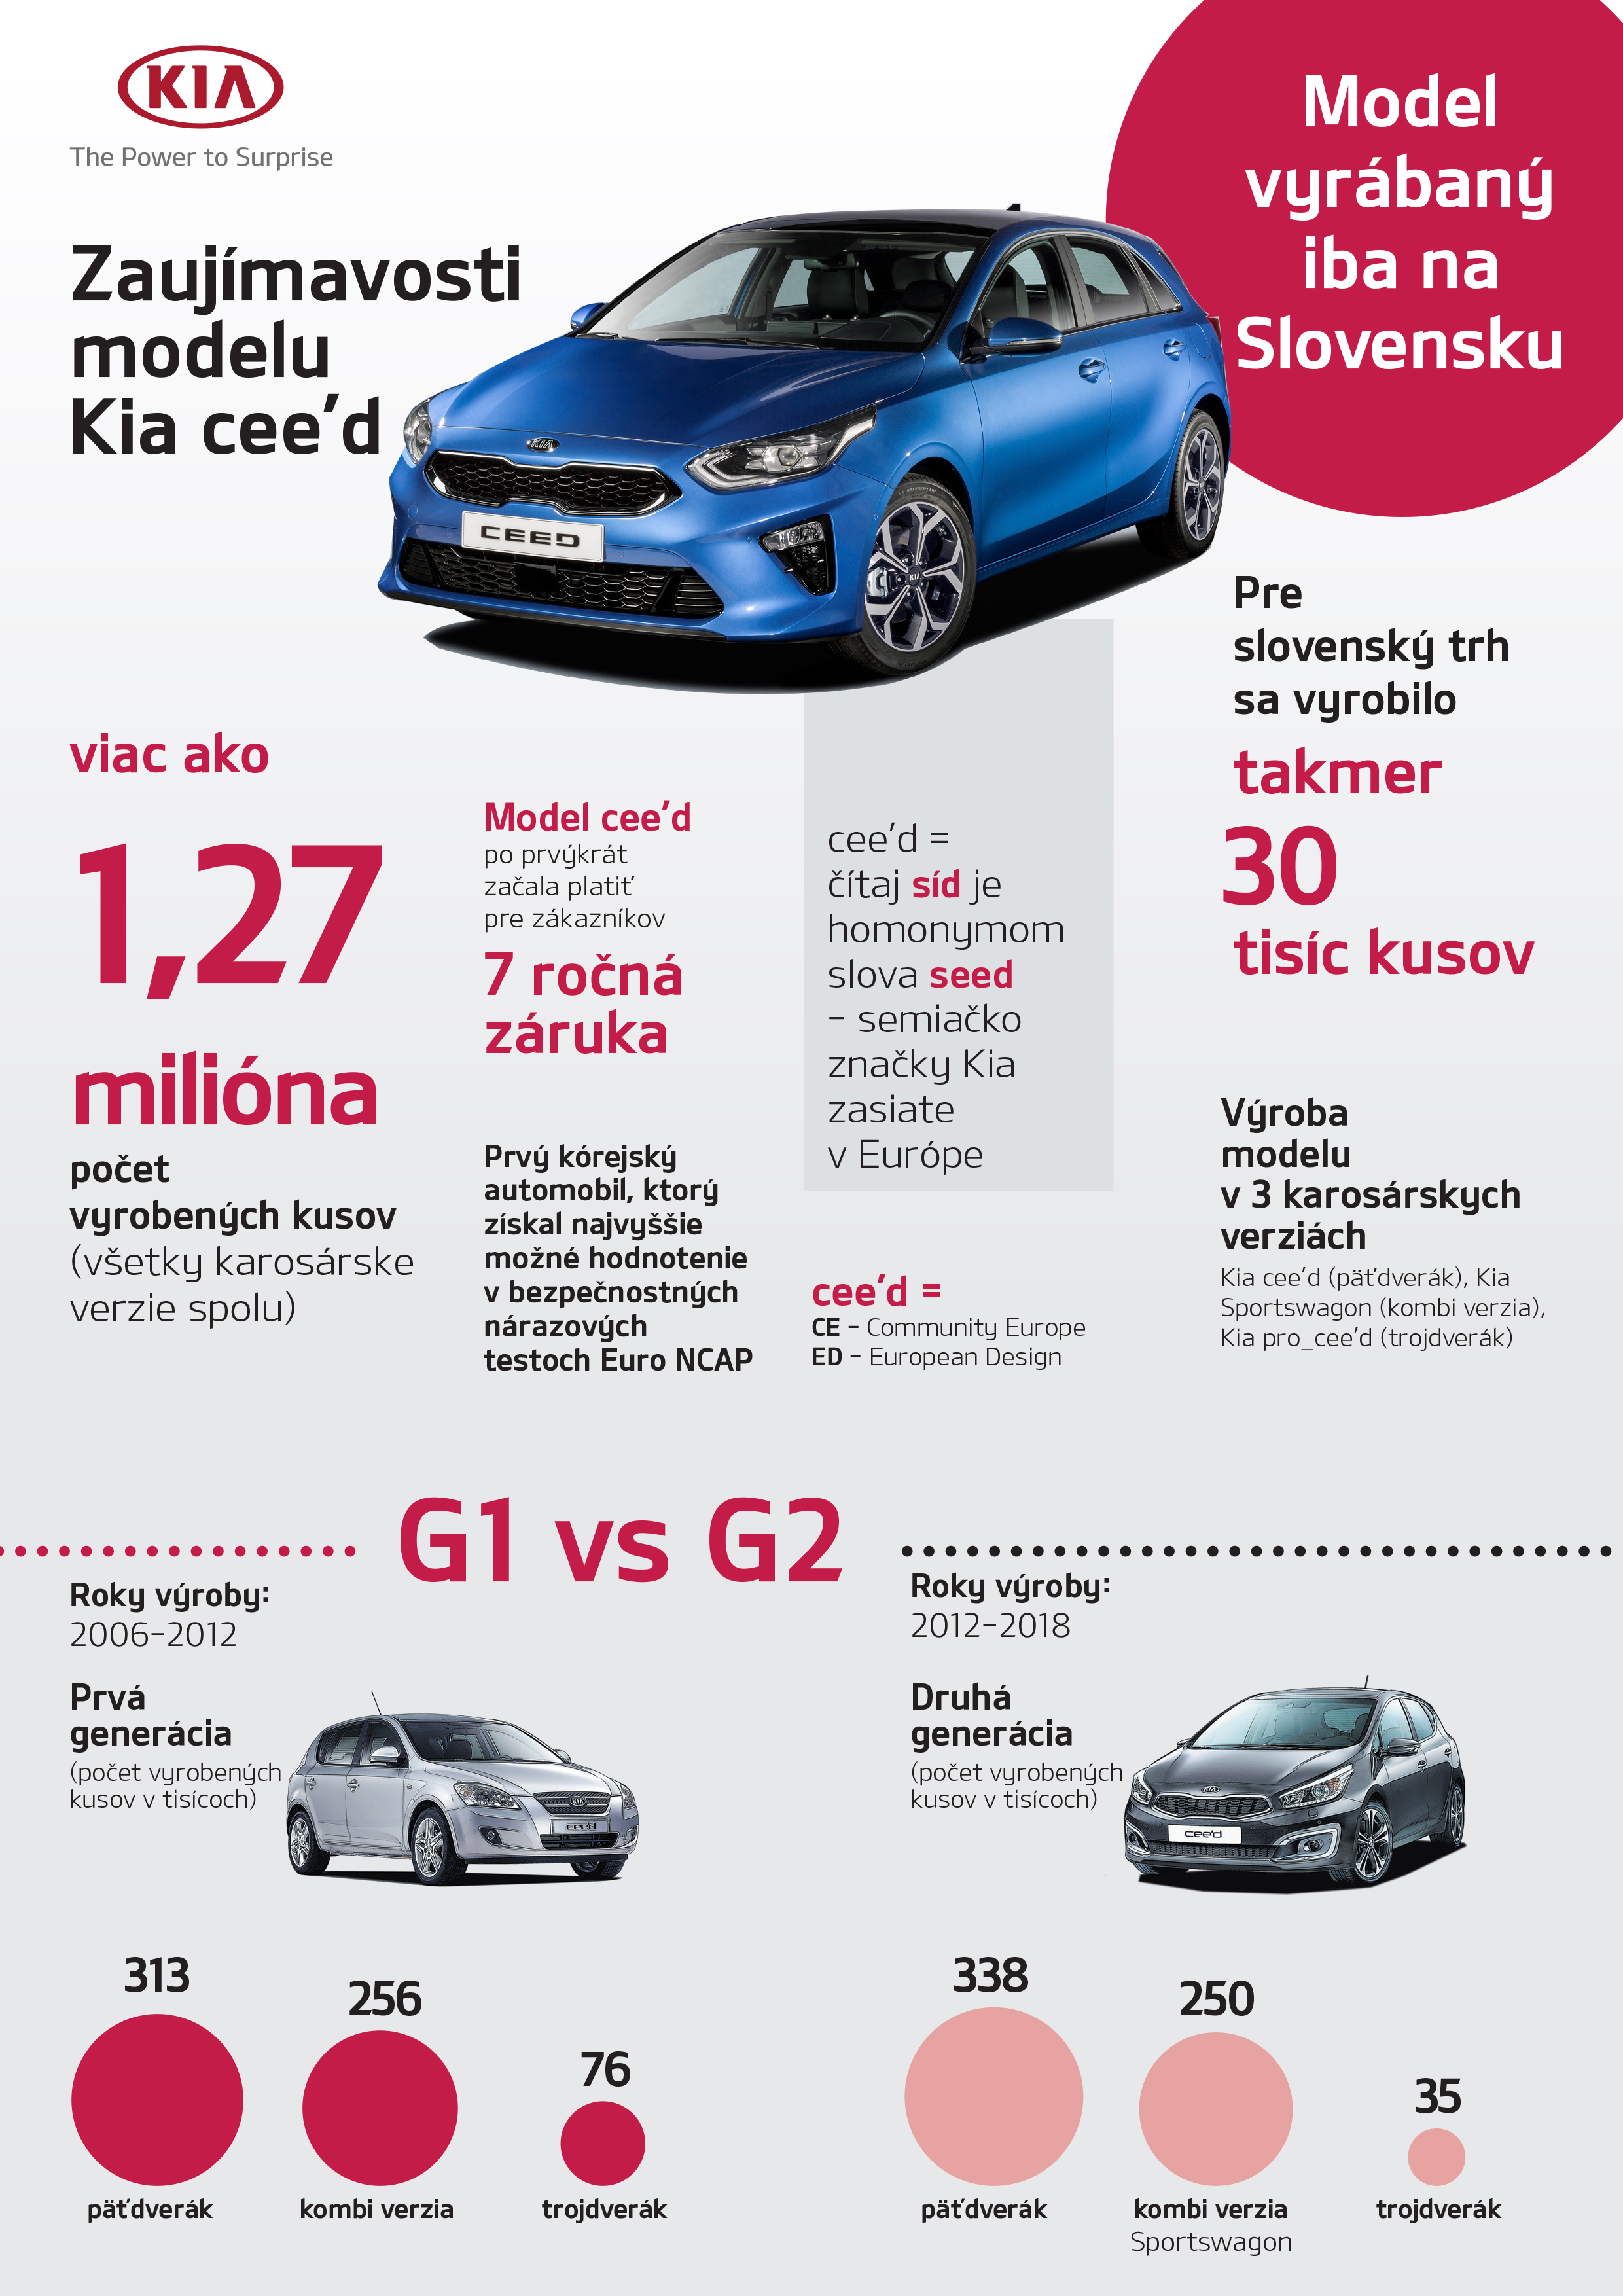 V Žiline dnes odštartuje sériová výroba tretej generácie Kia Ceed